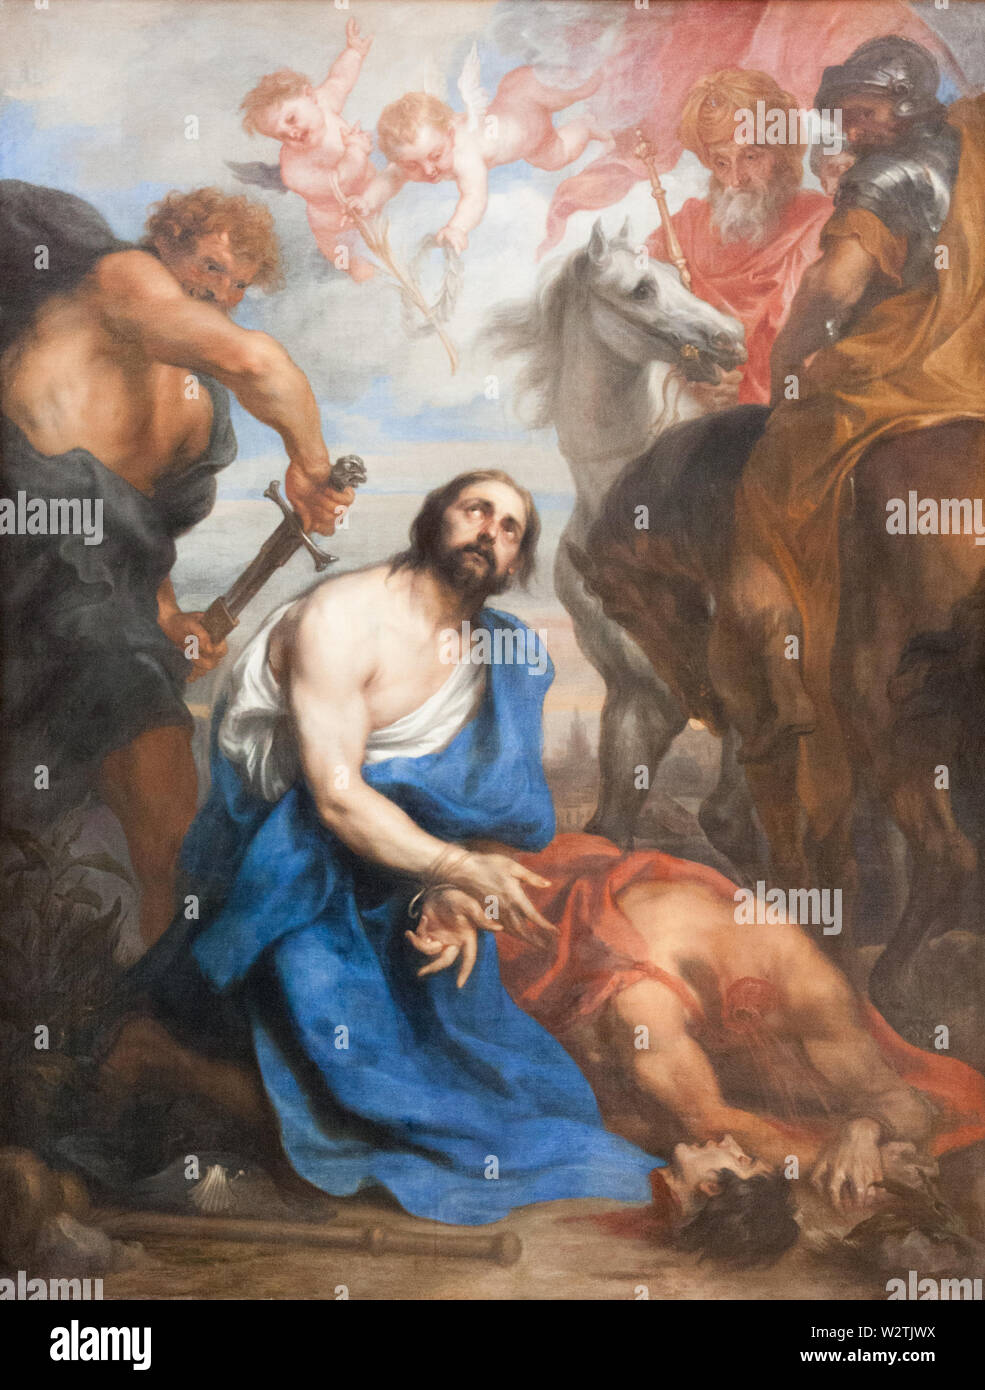 Valenciennes, France. 2017/9/14. La décapitation de Saint James (la plus grande). Actuellement affichée dans le Musée des beaux-arts de Valenciennes. Banque D'Images